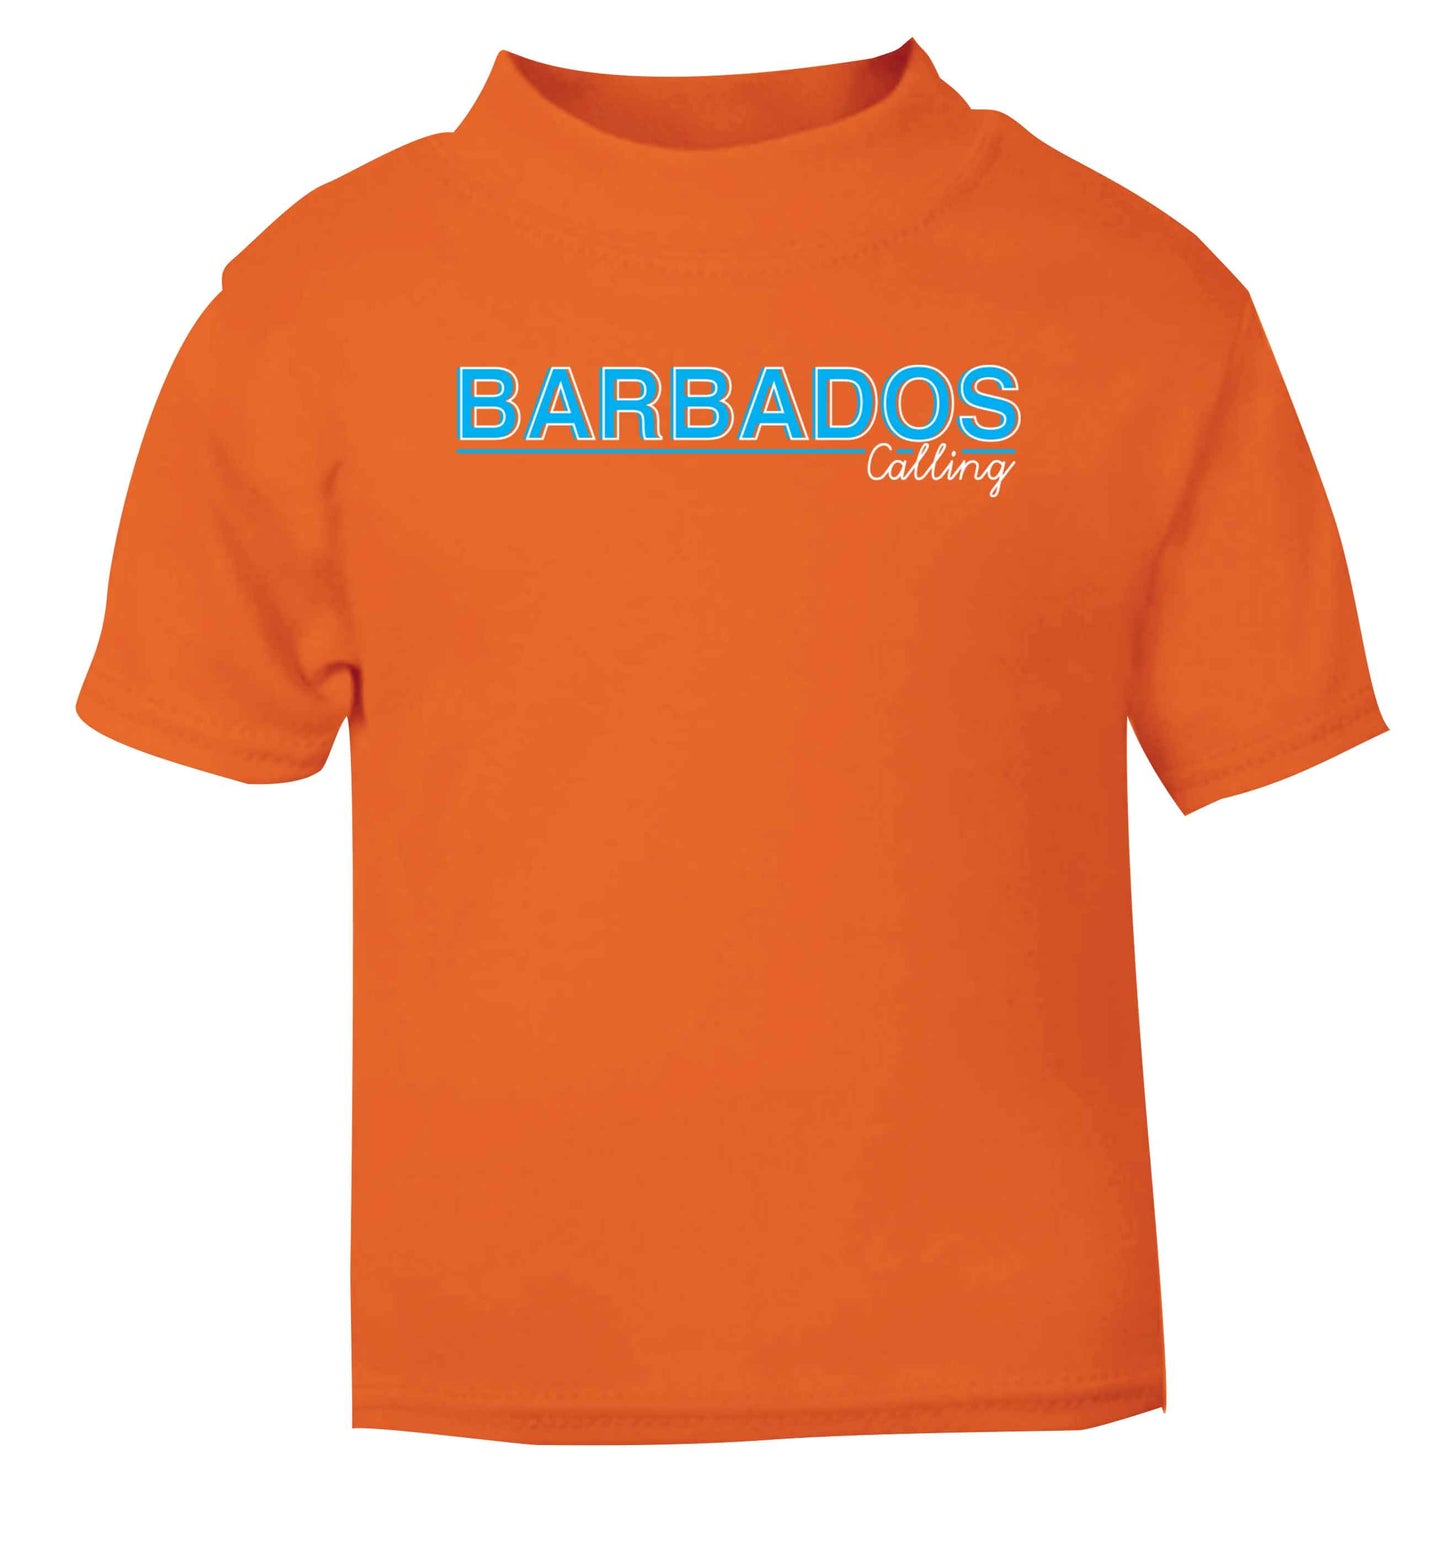 Barbados calling orange Baby Toddler Tshirt 2 Years